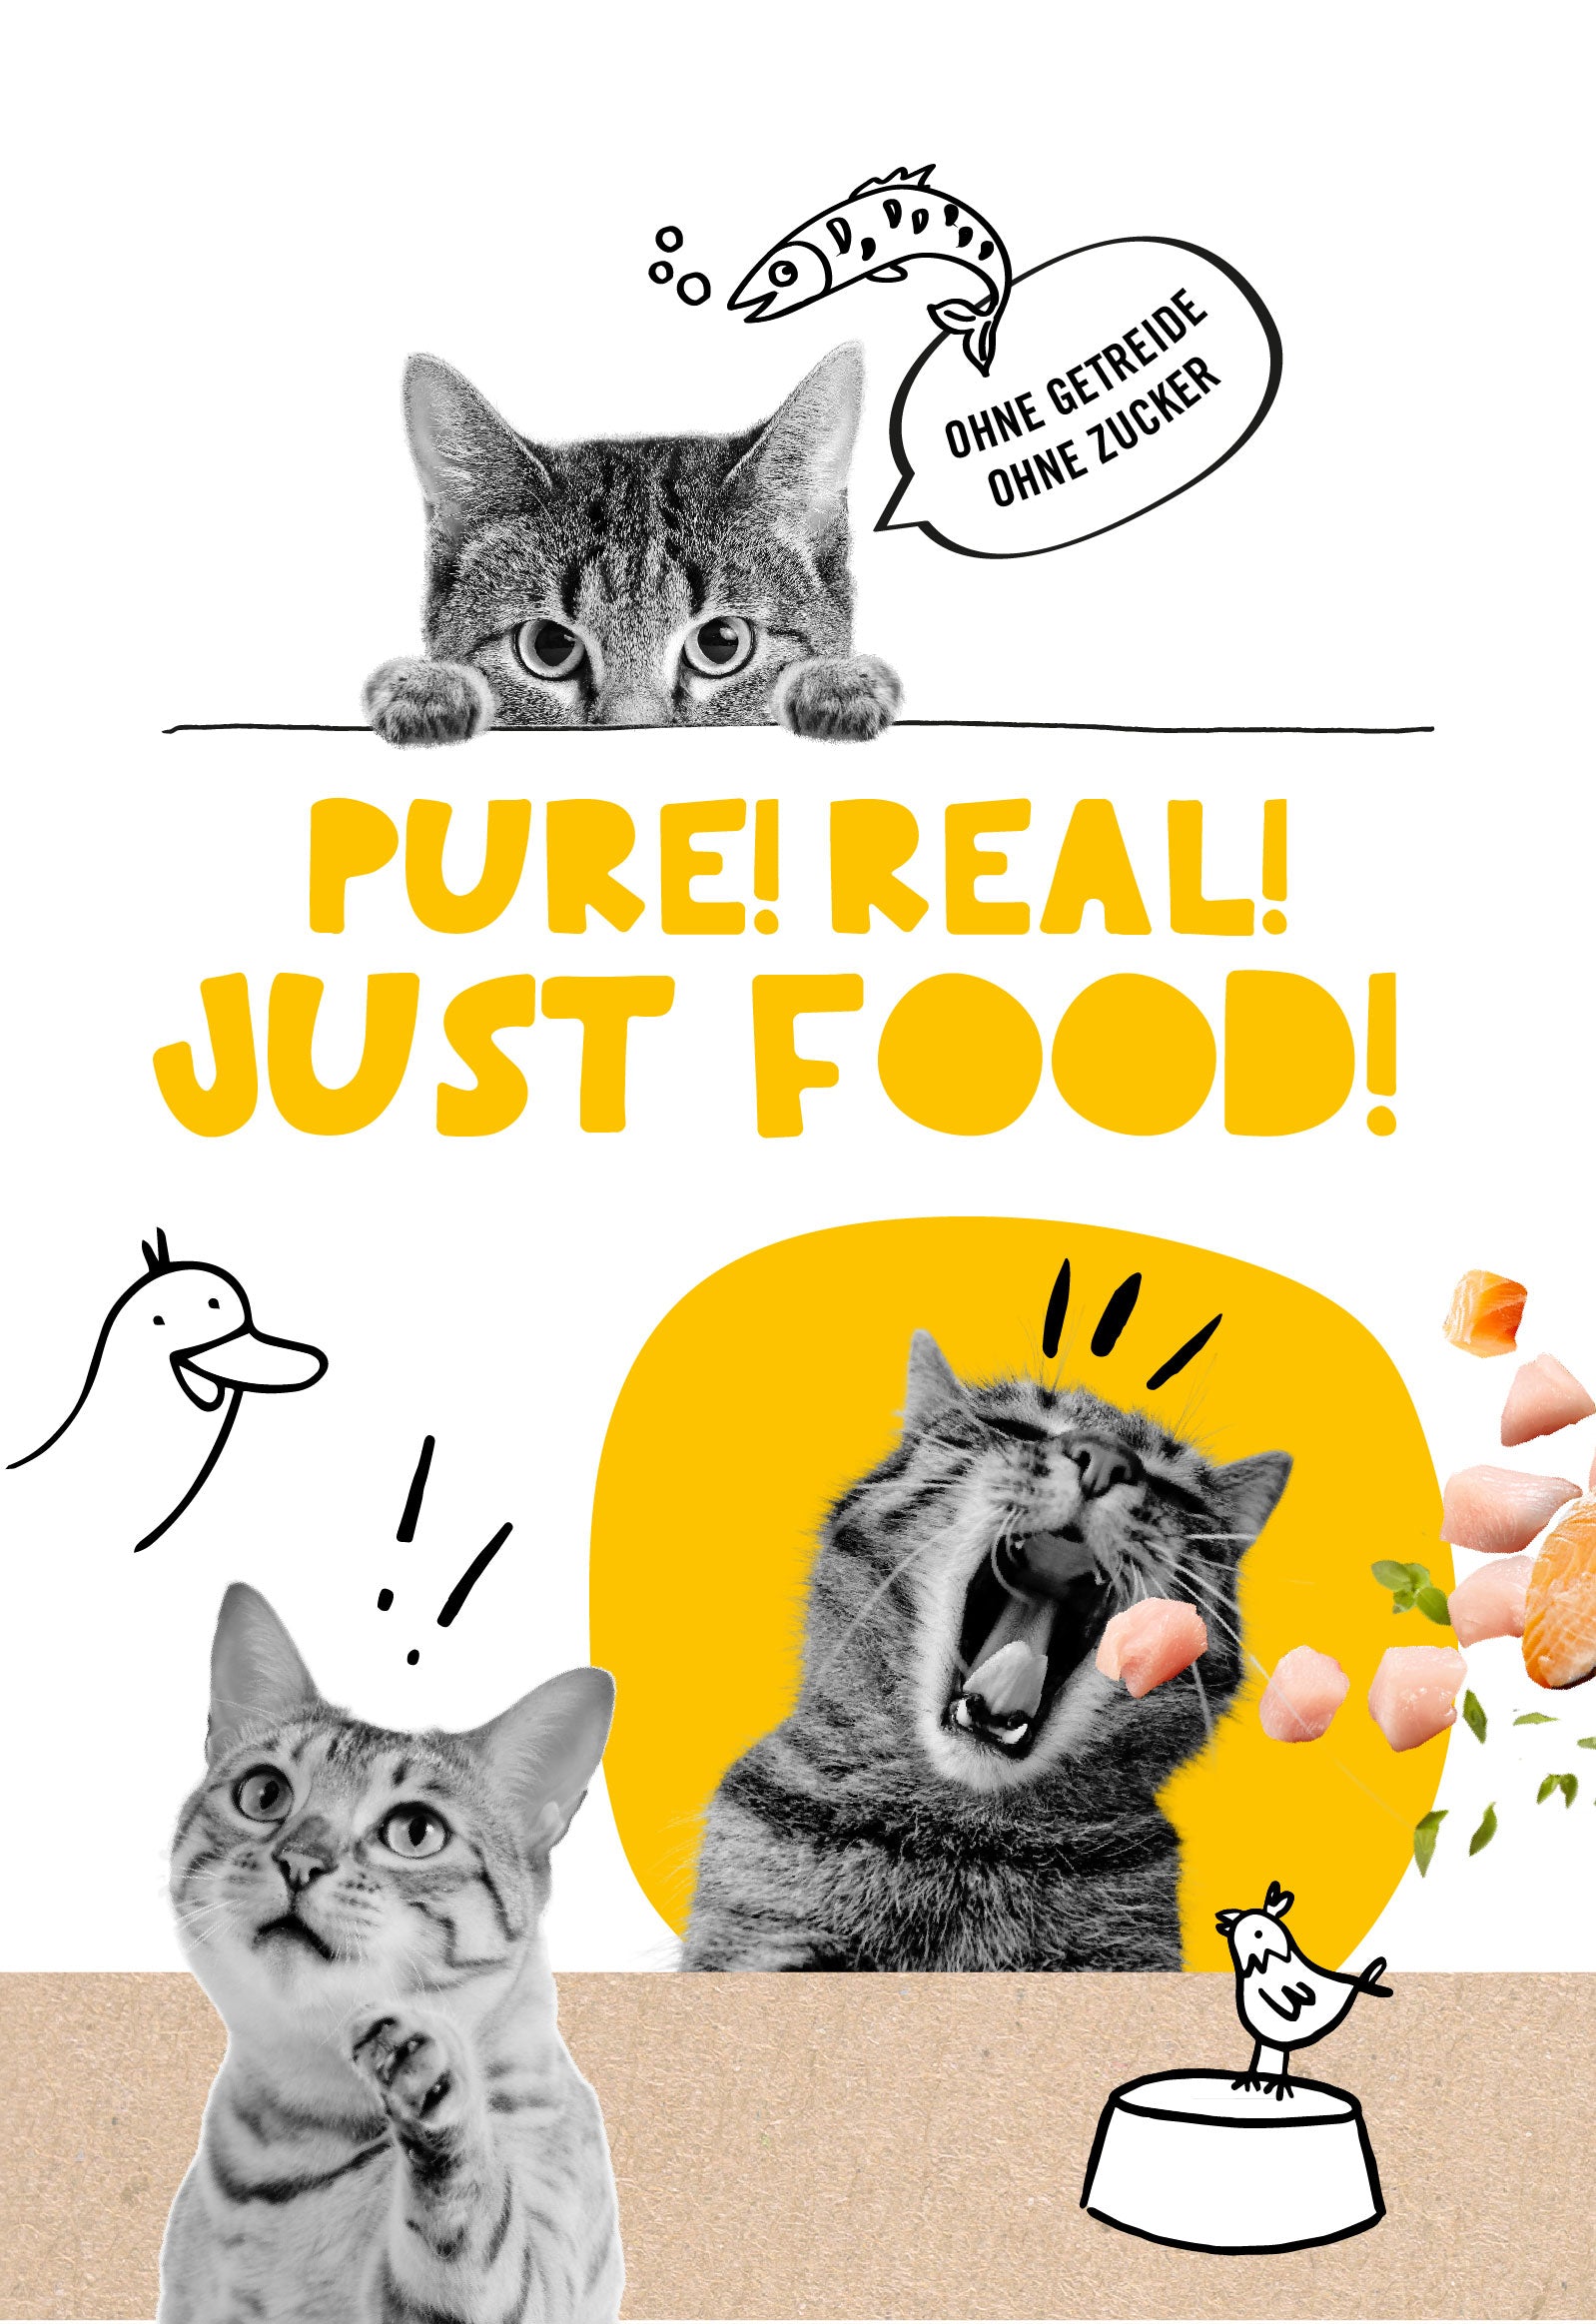 Banner Startseite Katzenfutter: Pure! Real! Just Food!